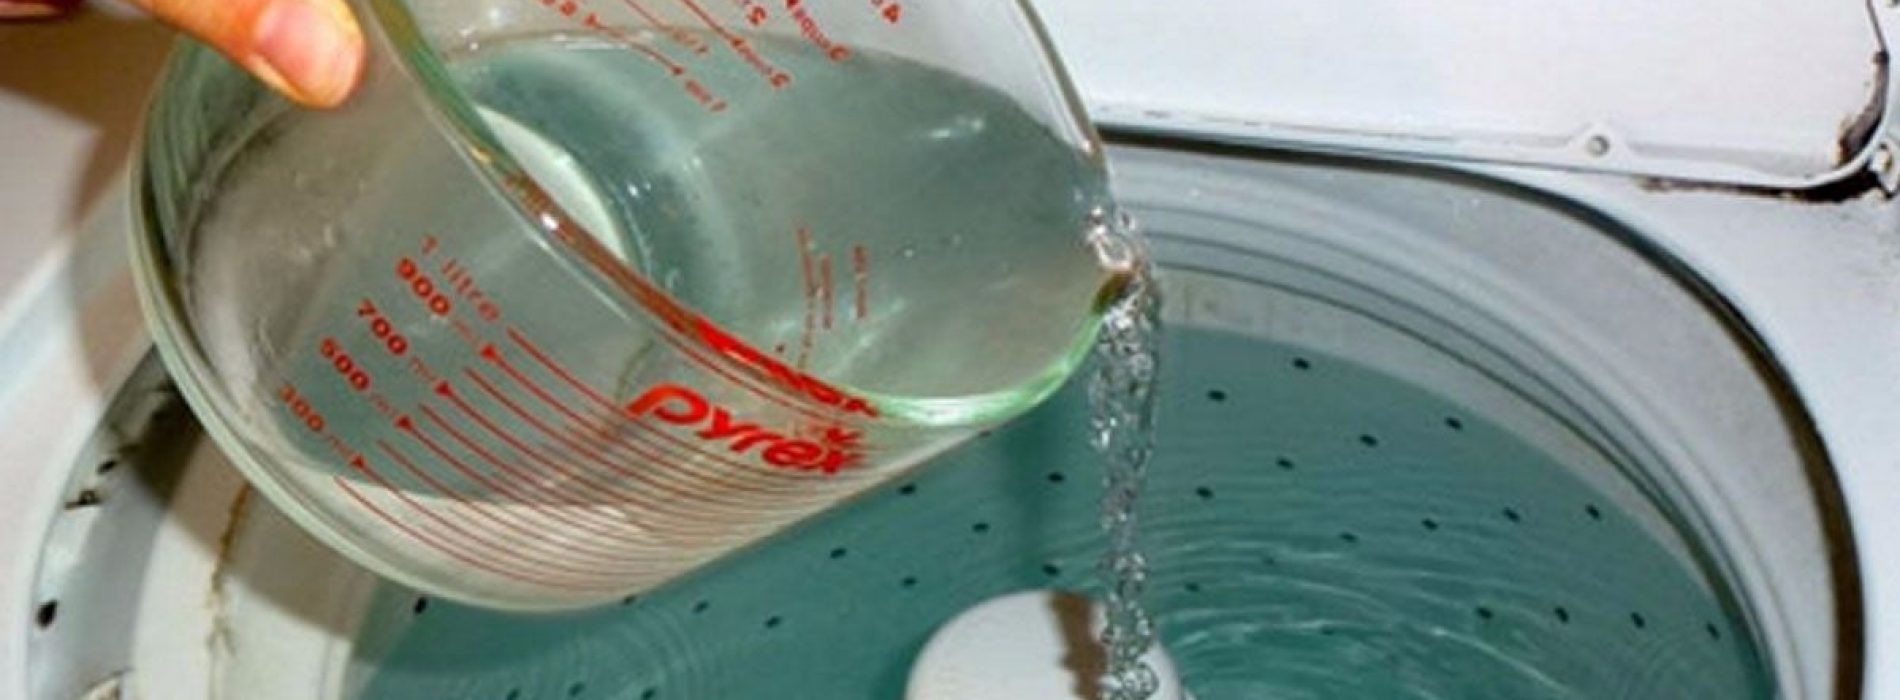 9 geniale redenen om azijn in de wasruimte te gebruiken